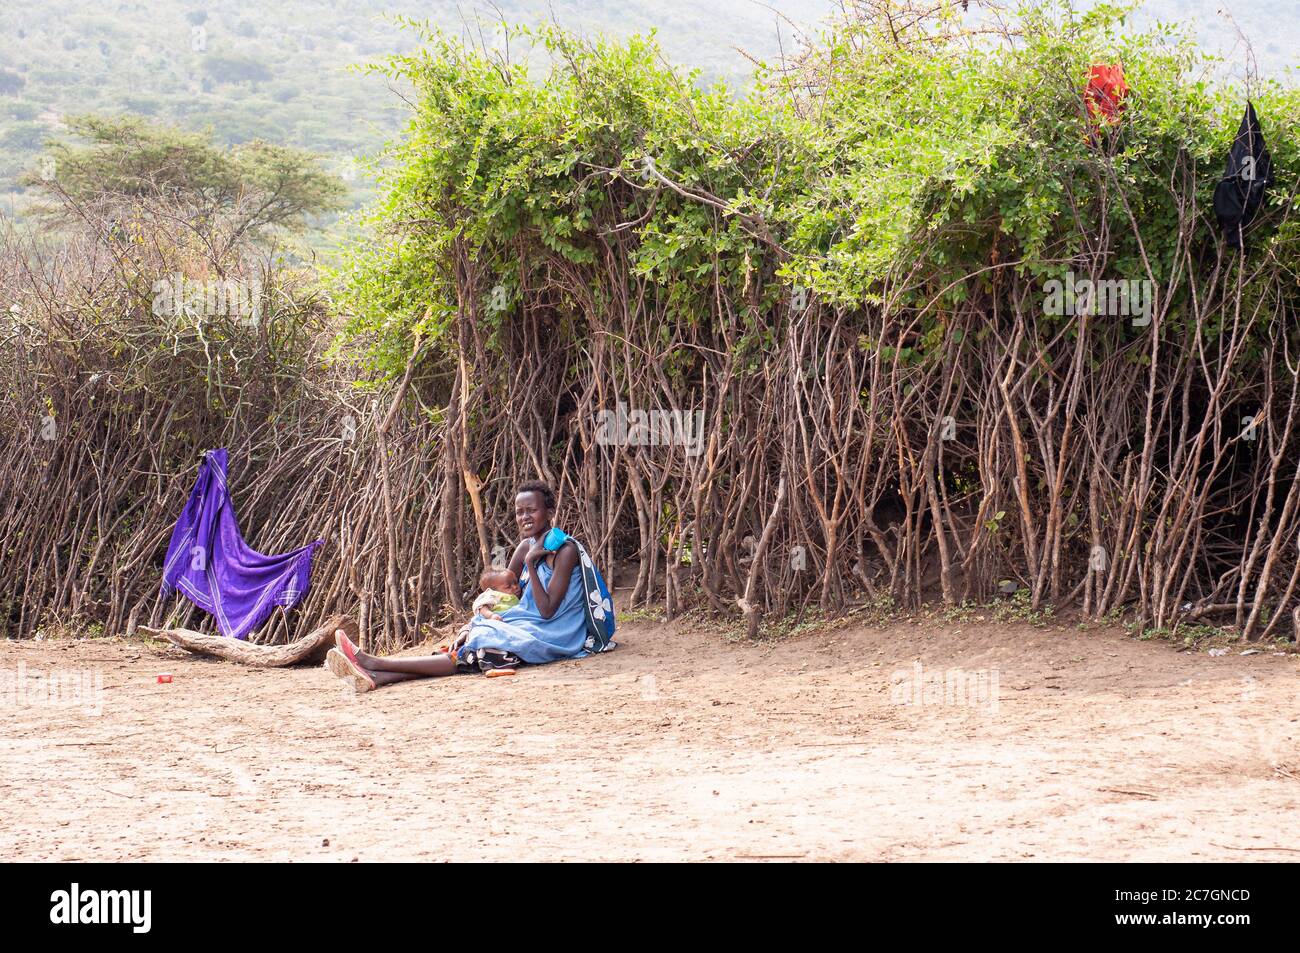 Maasai jeune mère et bébé, portant une tenue traditionnelle assise sur le sol, dans un village de maasai, dans la réserve nationale de Maasai Mara. Kenya. Afrique. Banque D'Images